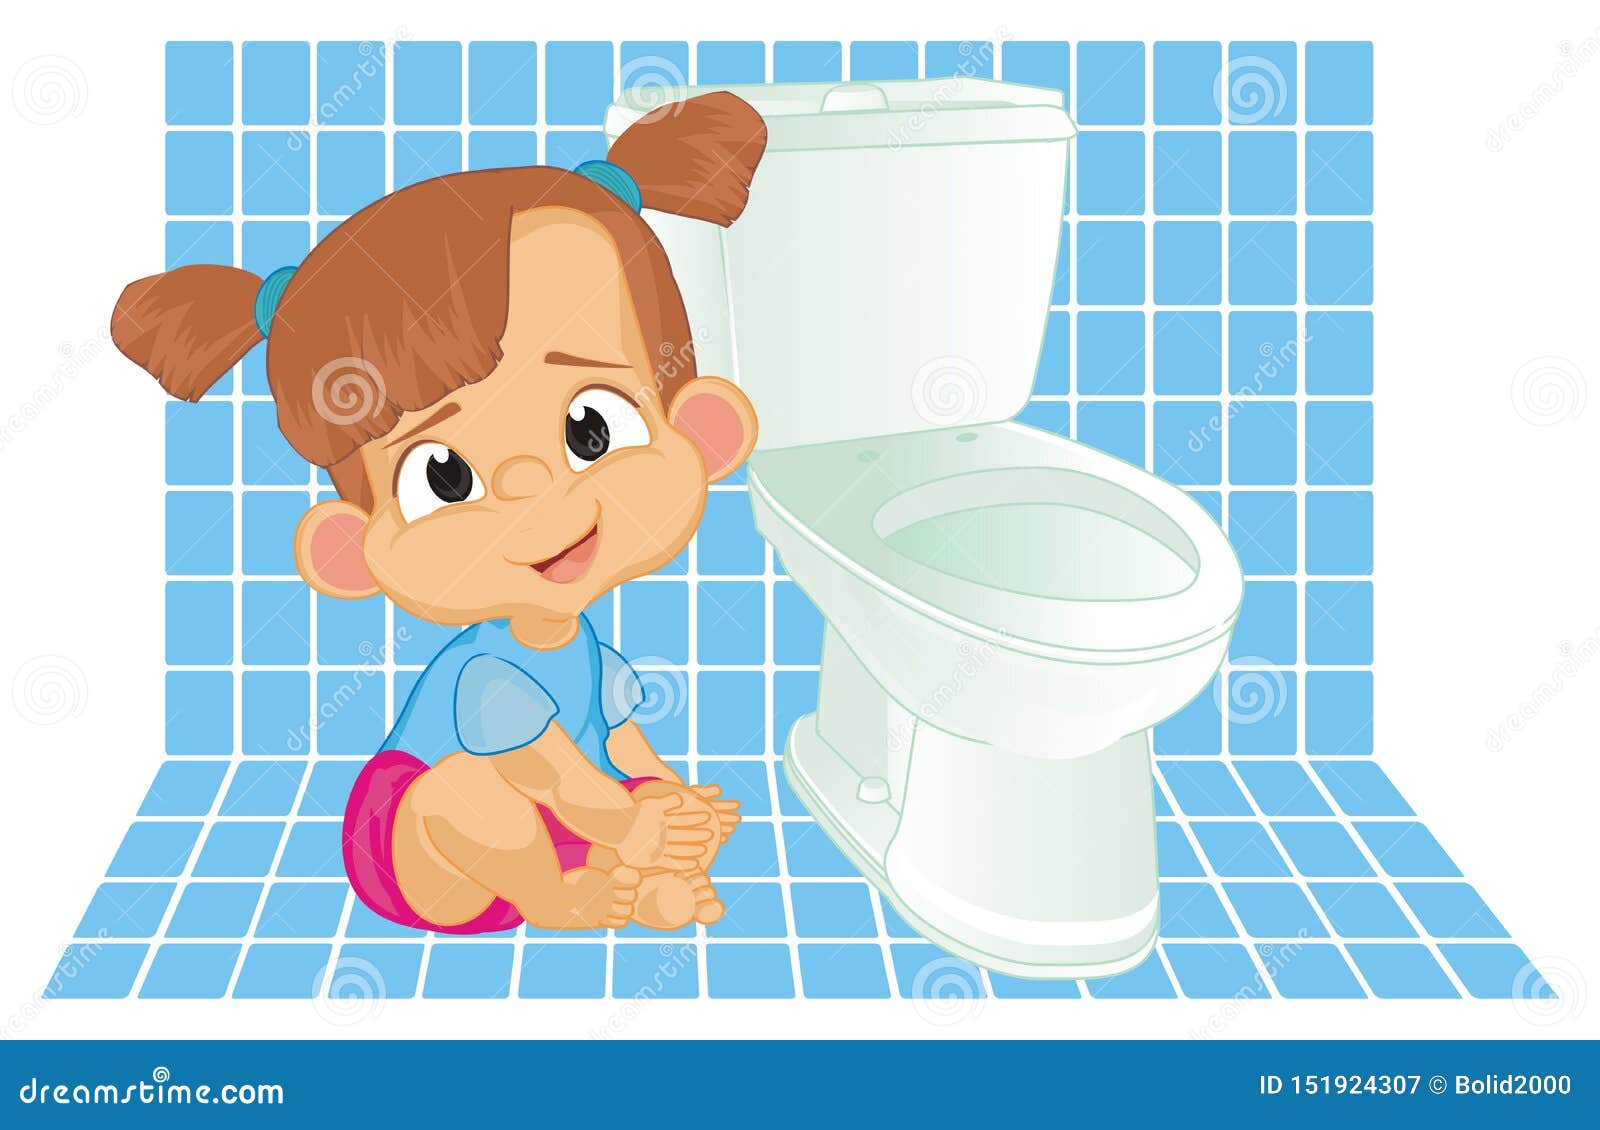 Картинка туалет девочек. Девочка в туалете. Туалет для мальчиков. Туалет мальчик девочка. Туалет для девочек в детском саду.